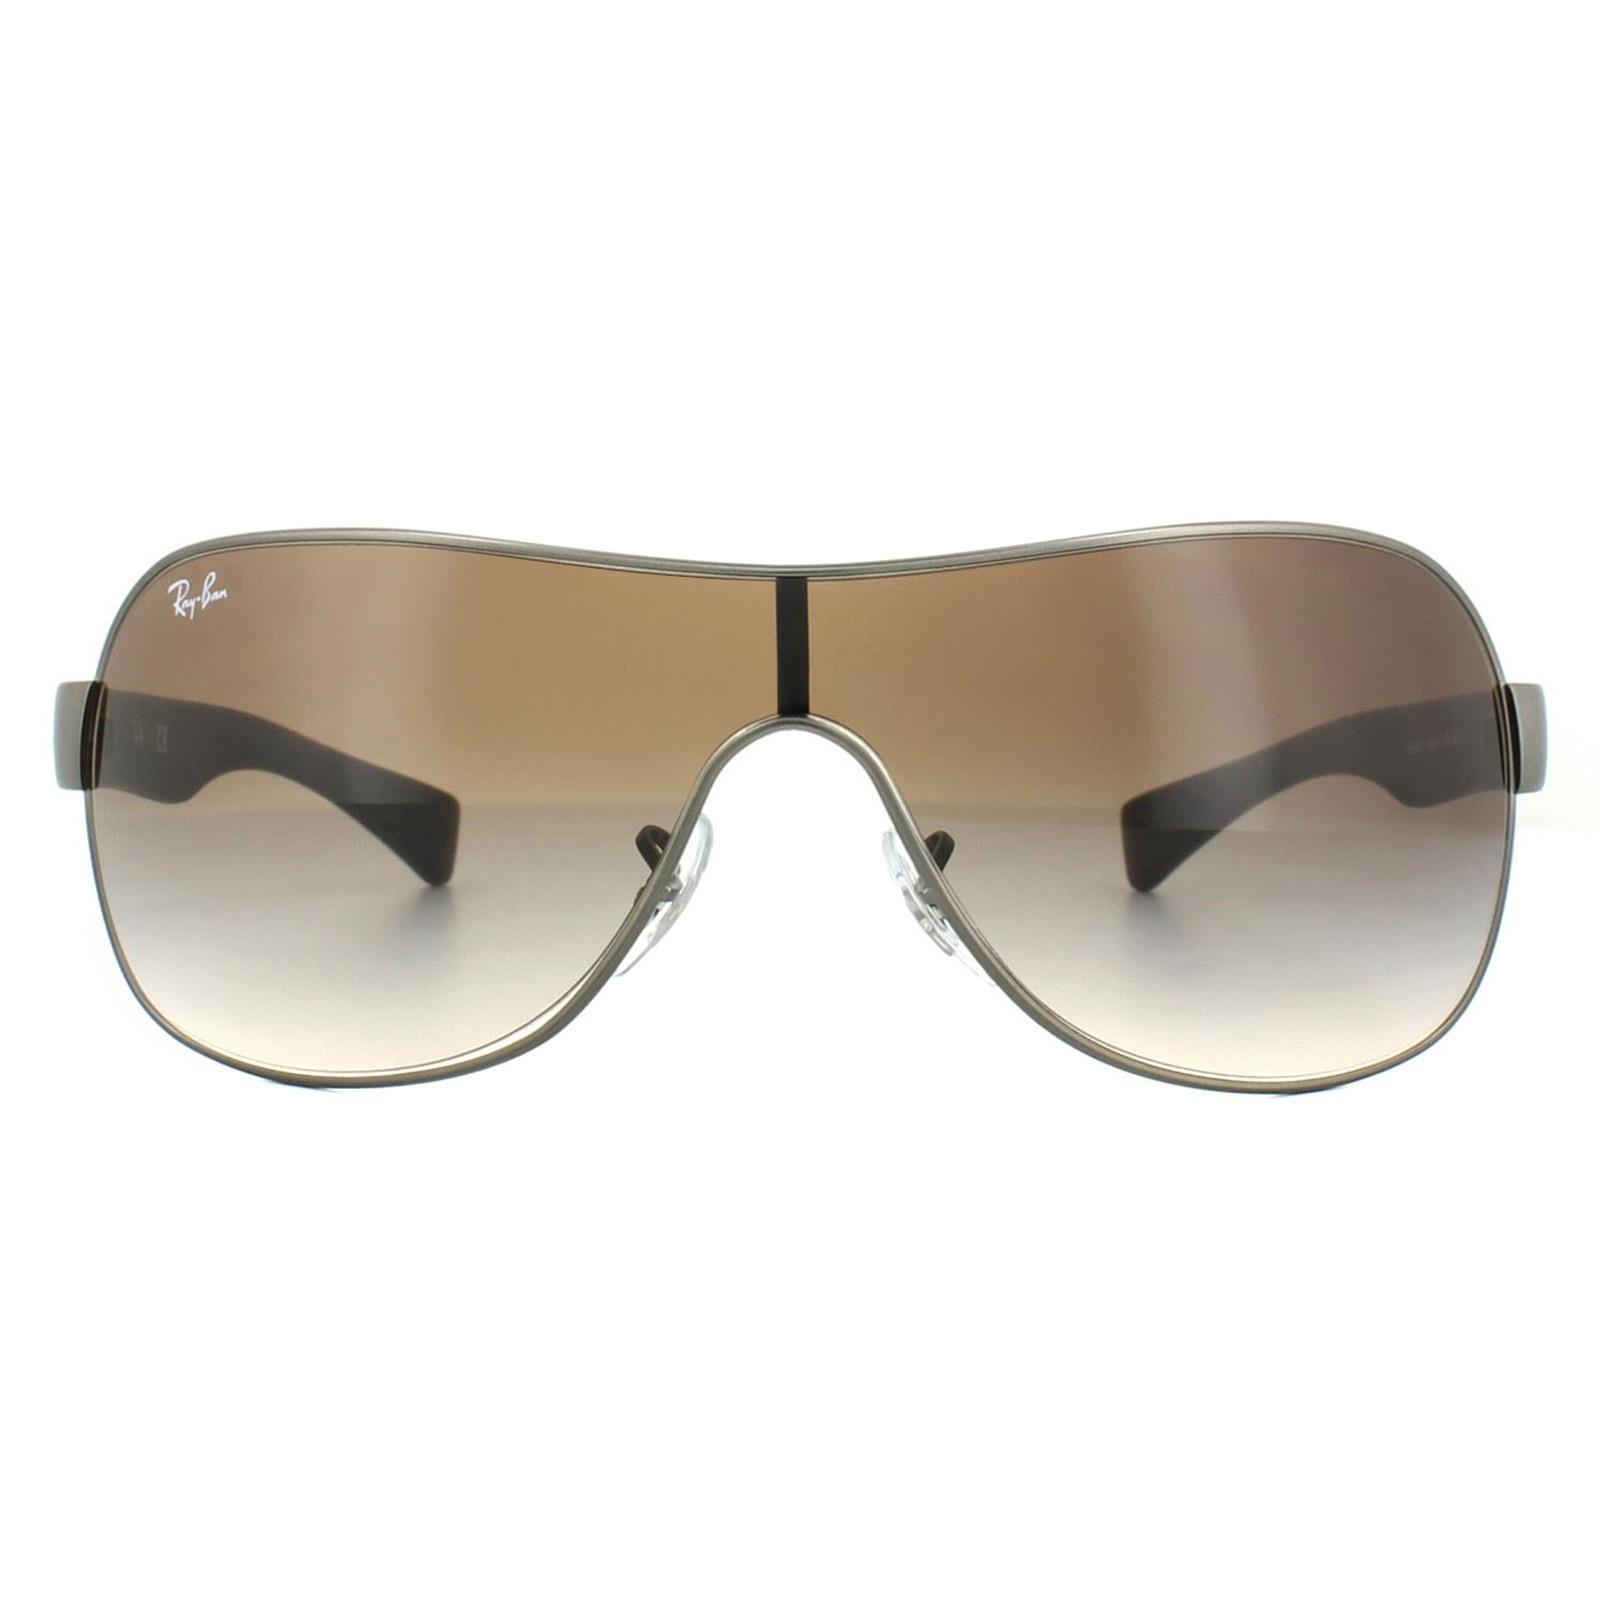 Солнцезащитные очки с градиентом матового коричневого цвета из бронзового металла Shield Ray-Ban, серый солнцезащитные очки zara metal frame черный